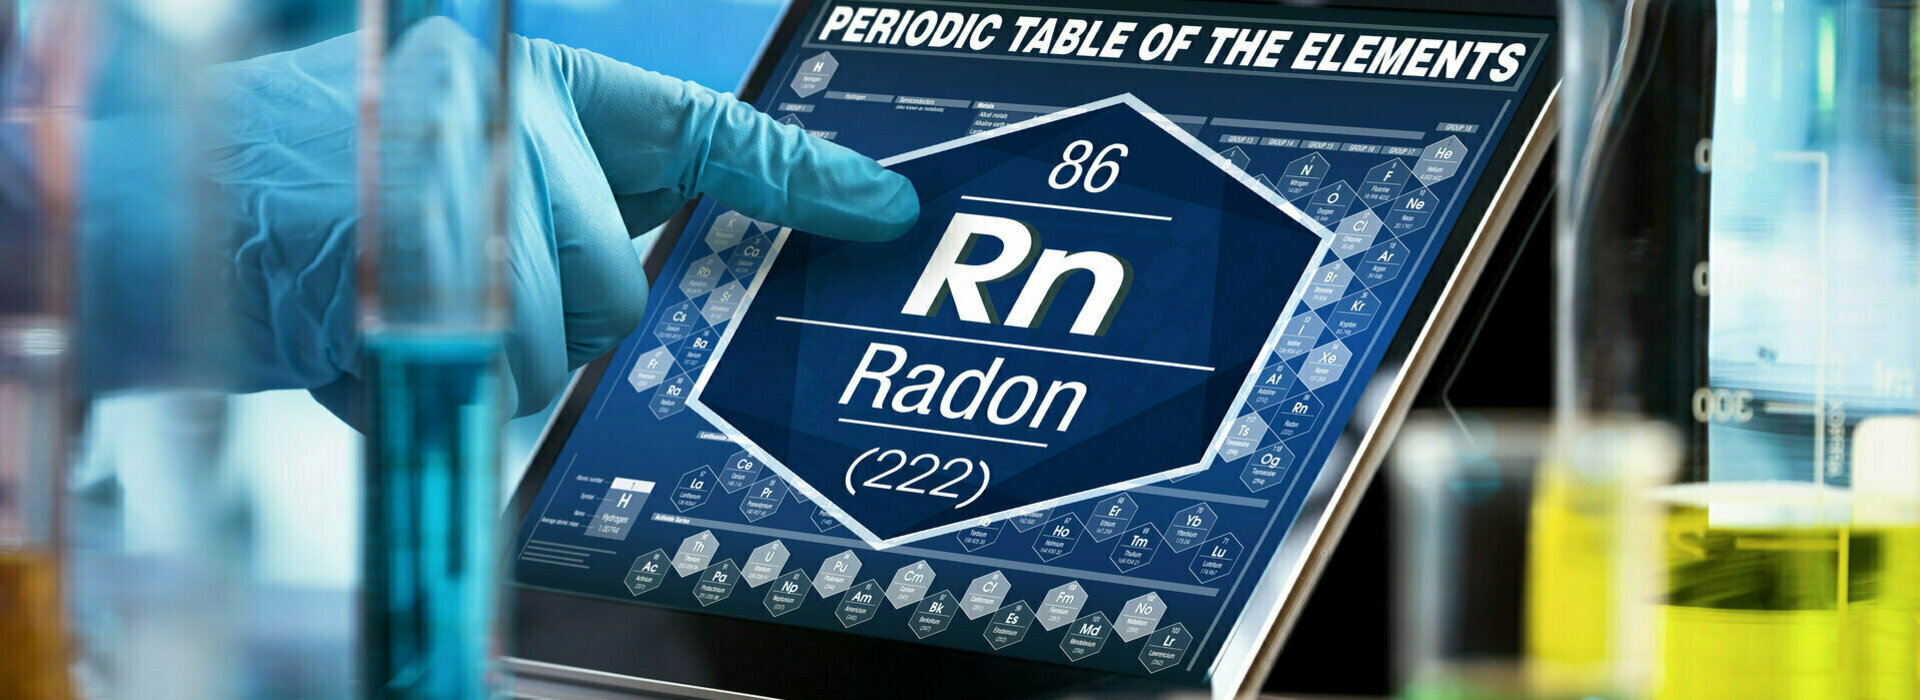 Comment mesurer le gaz radon ?